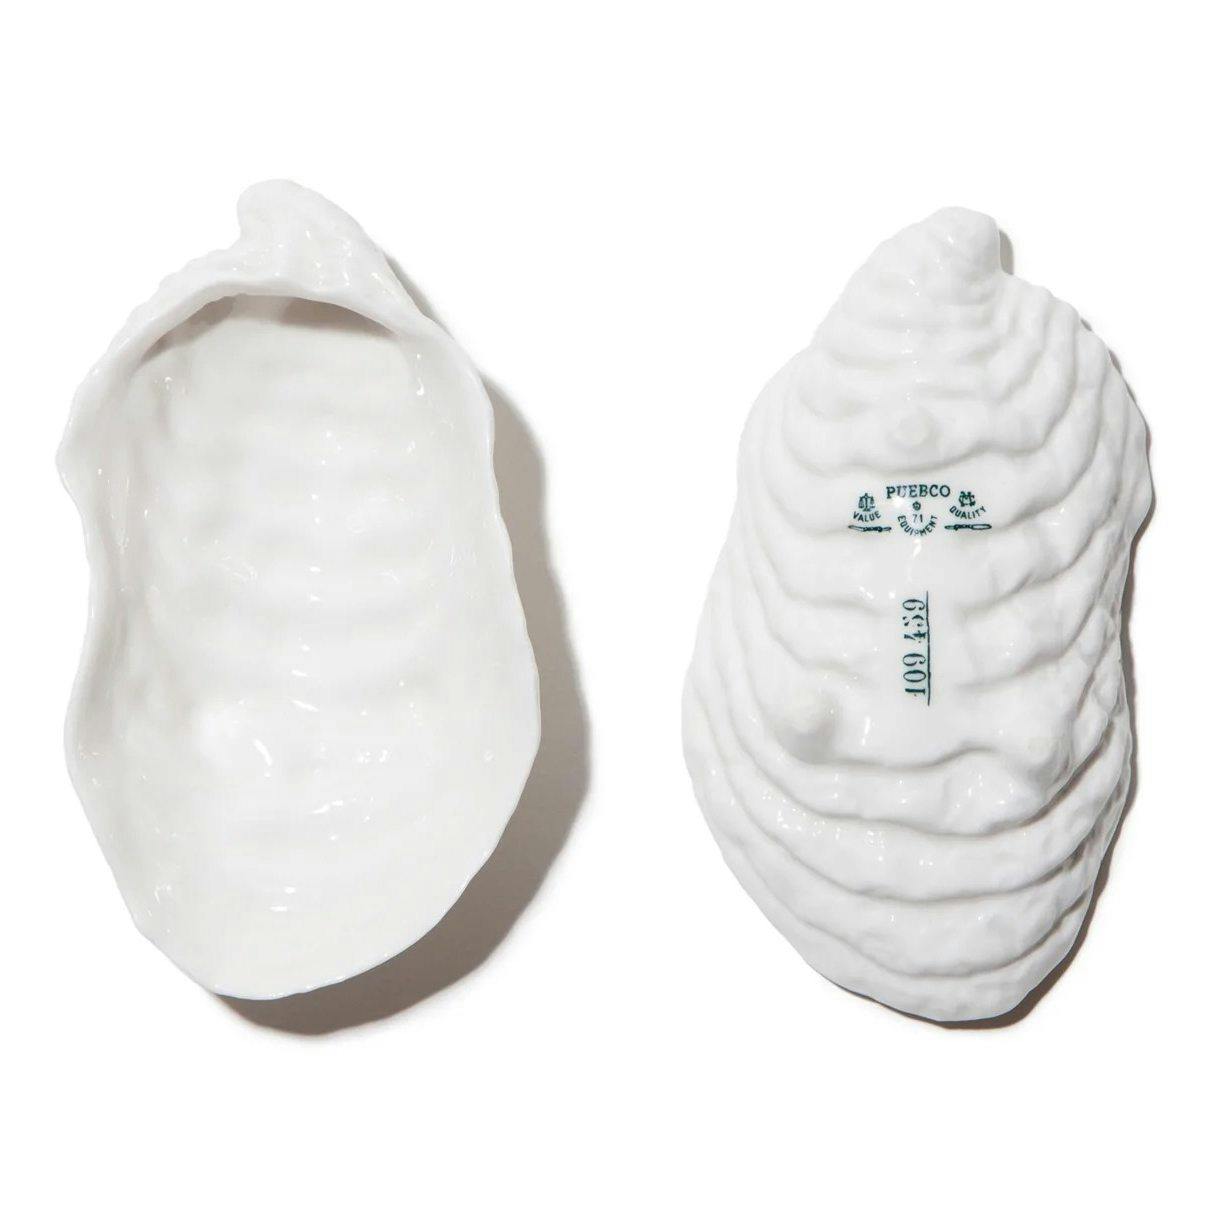 Ceramic Seashell Tray - Oyster